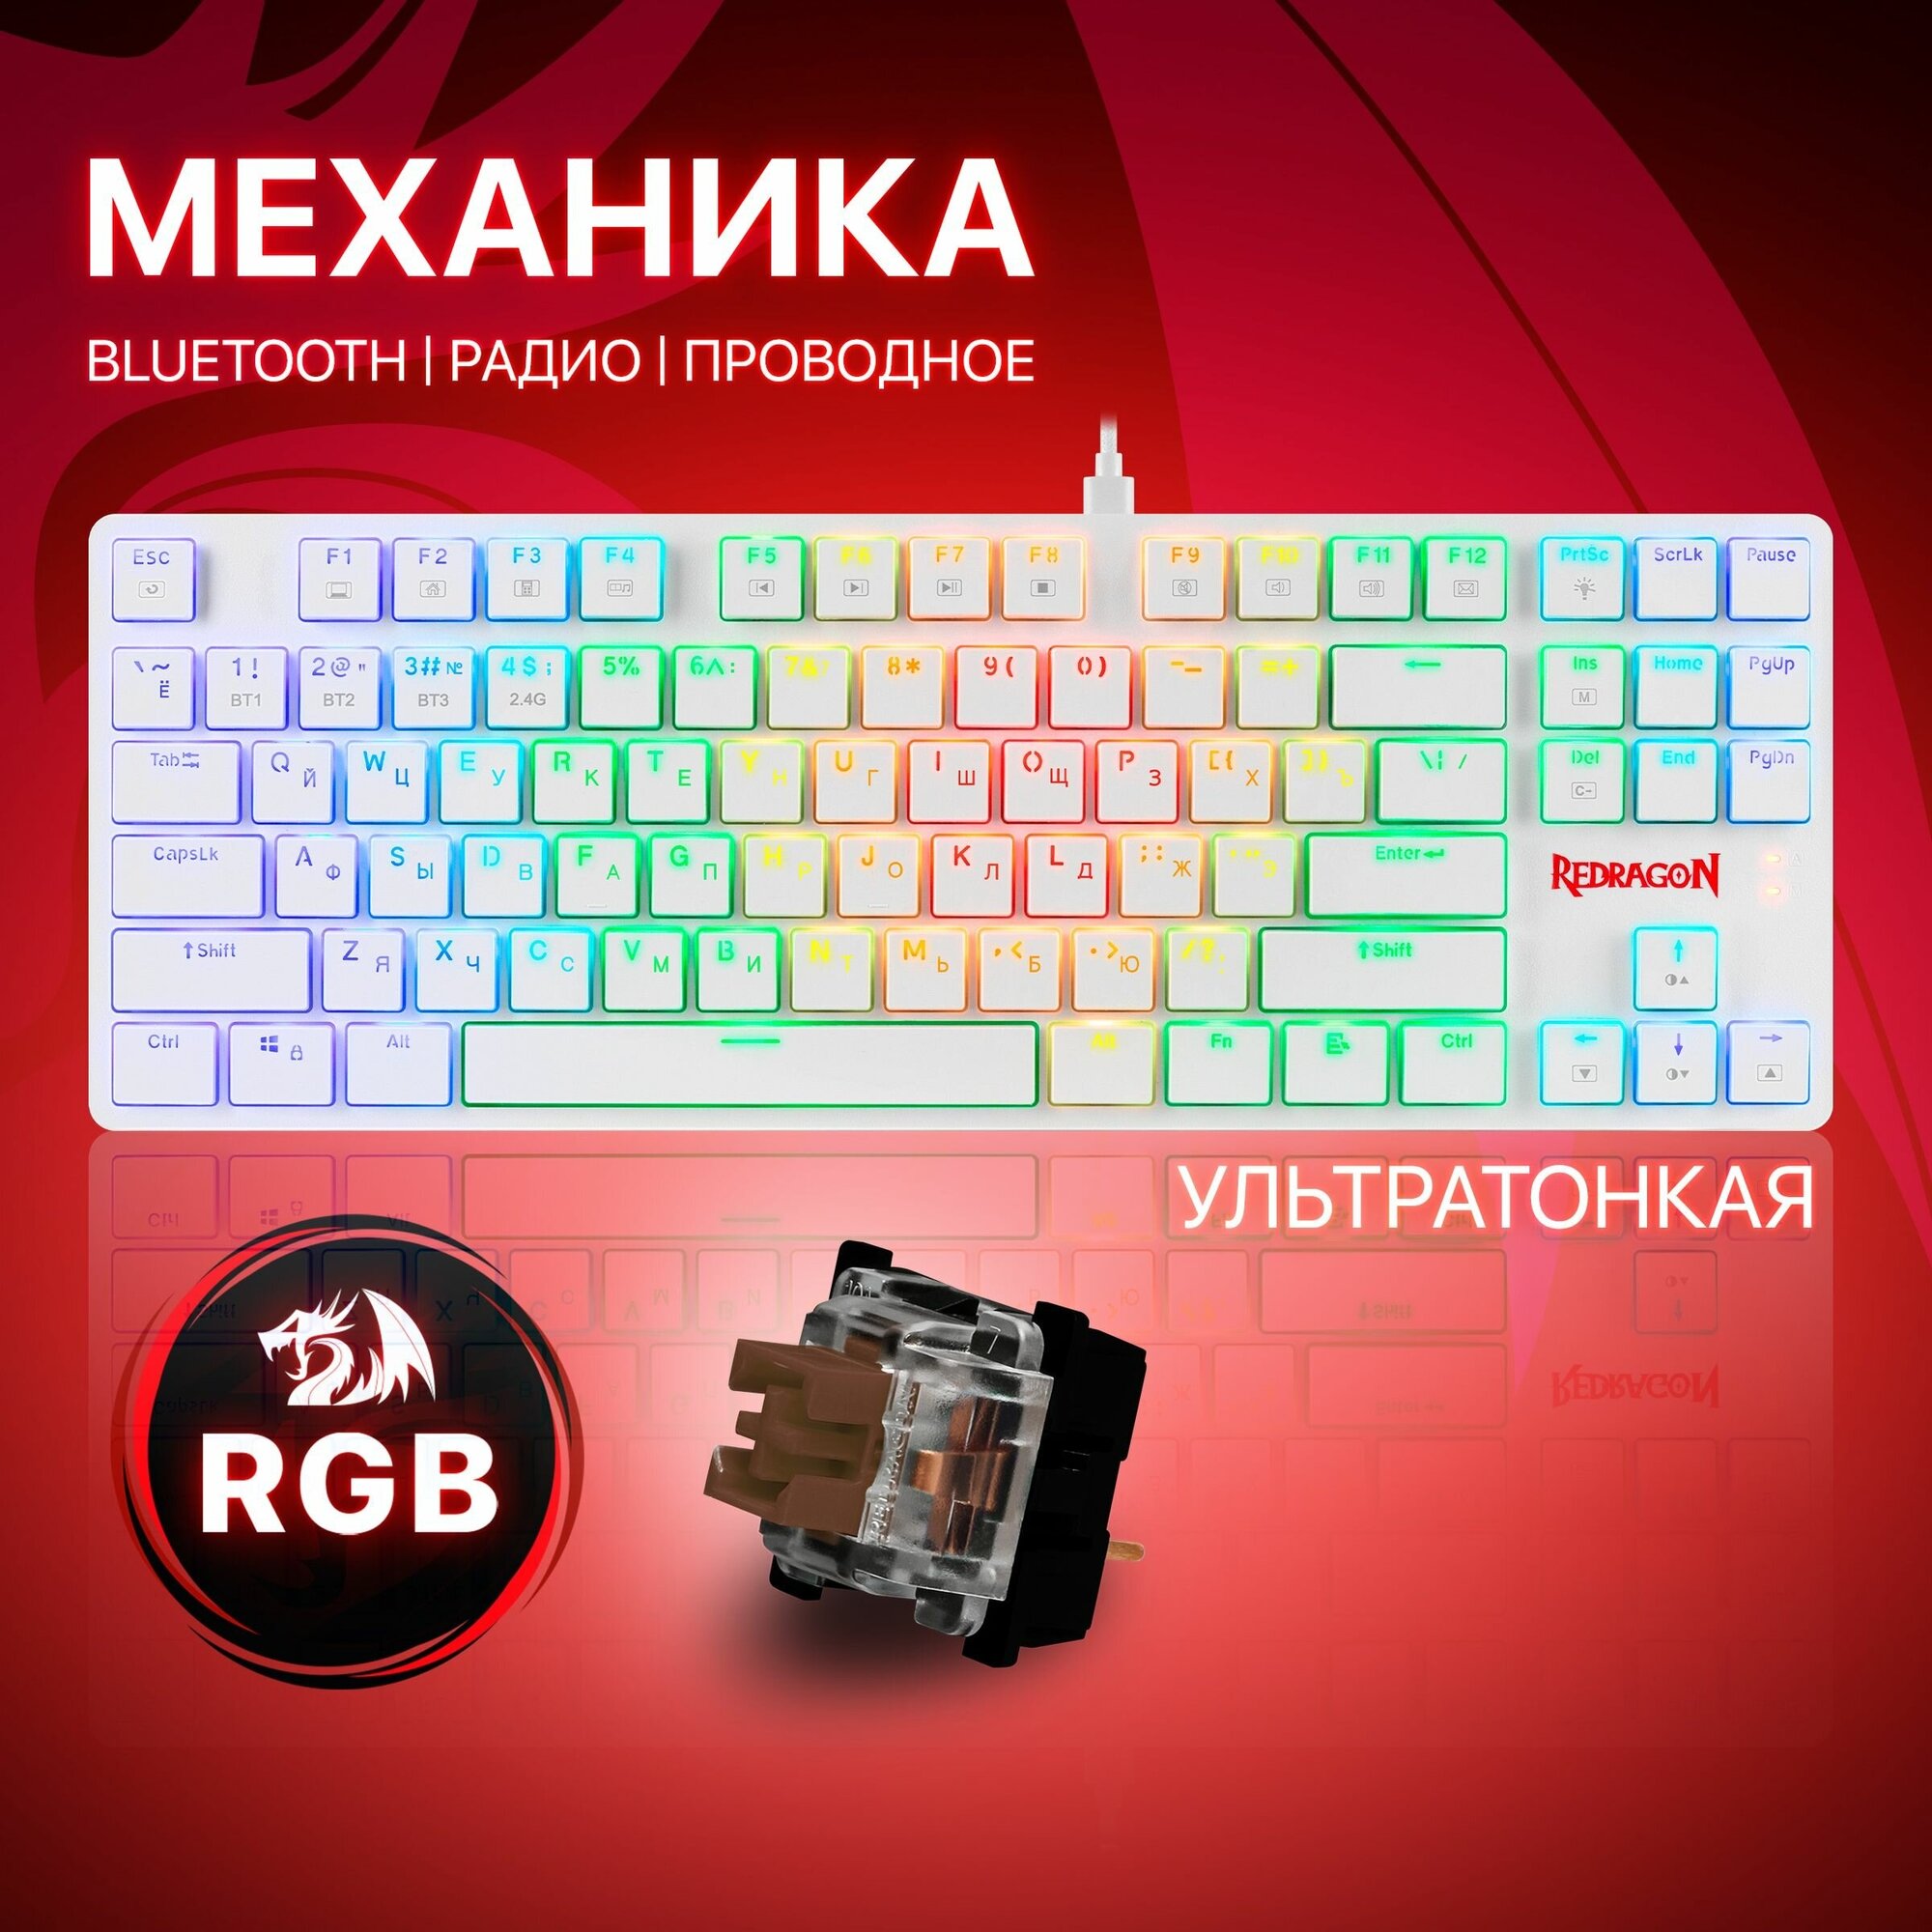 Игровая механическая клавиатура Redragon Anubis Outemu Tea тонкая беспроводная с RGB подсветкой